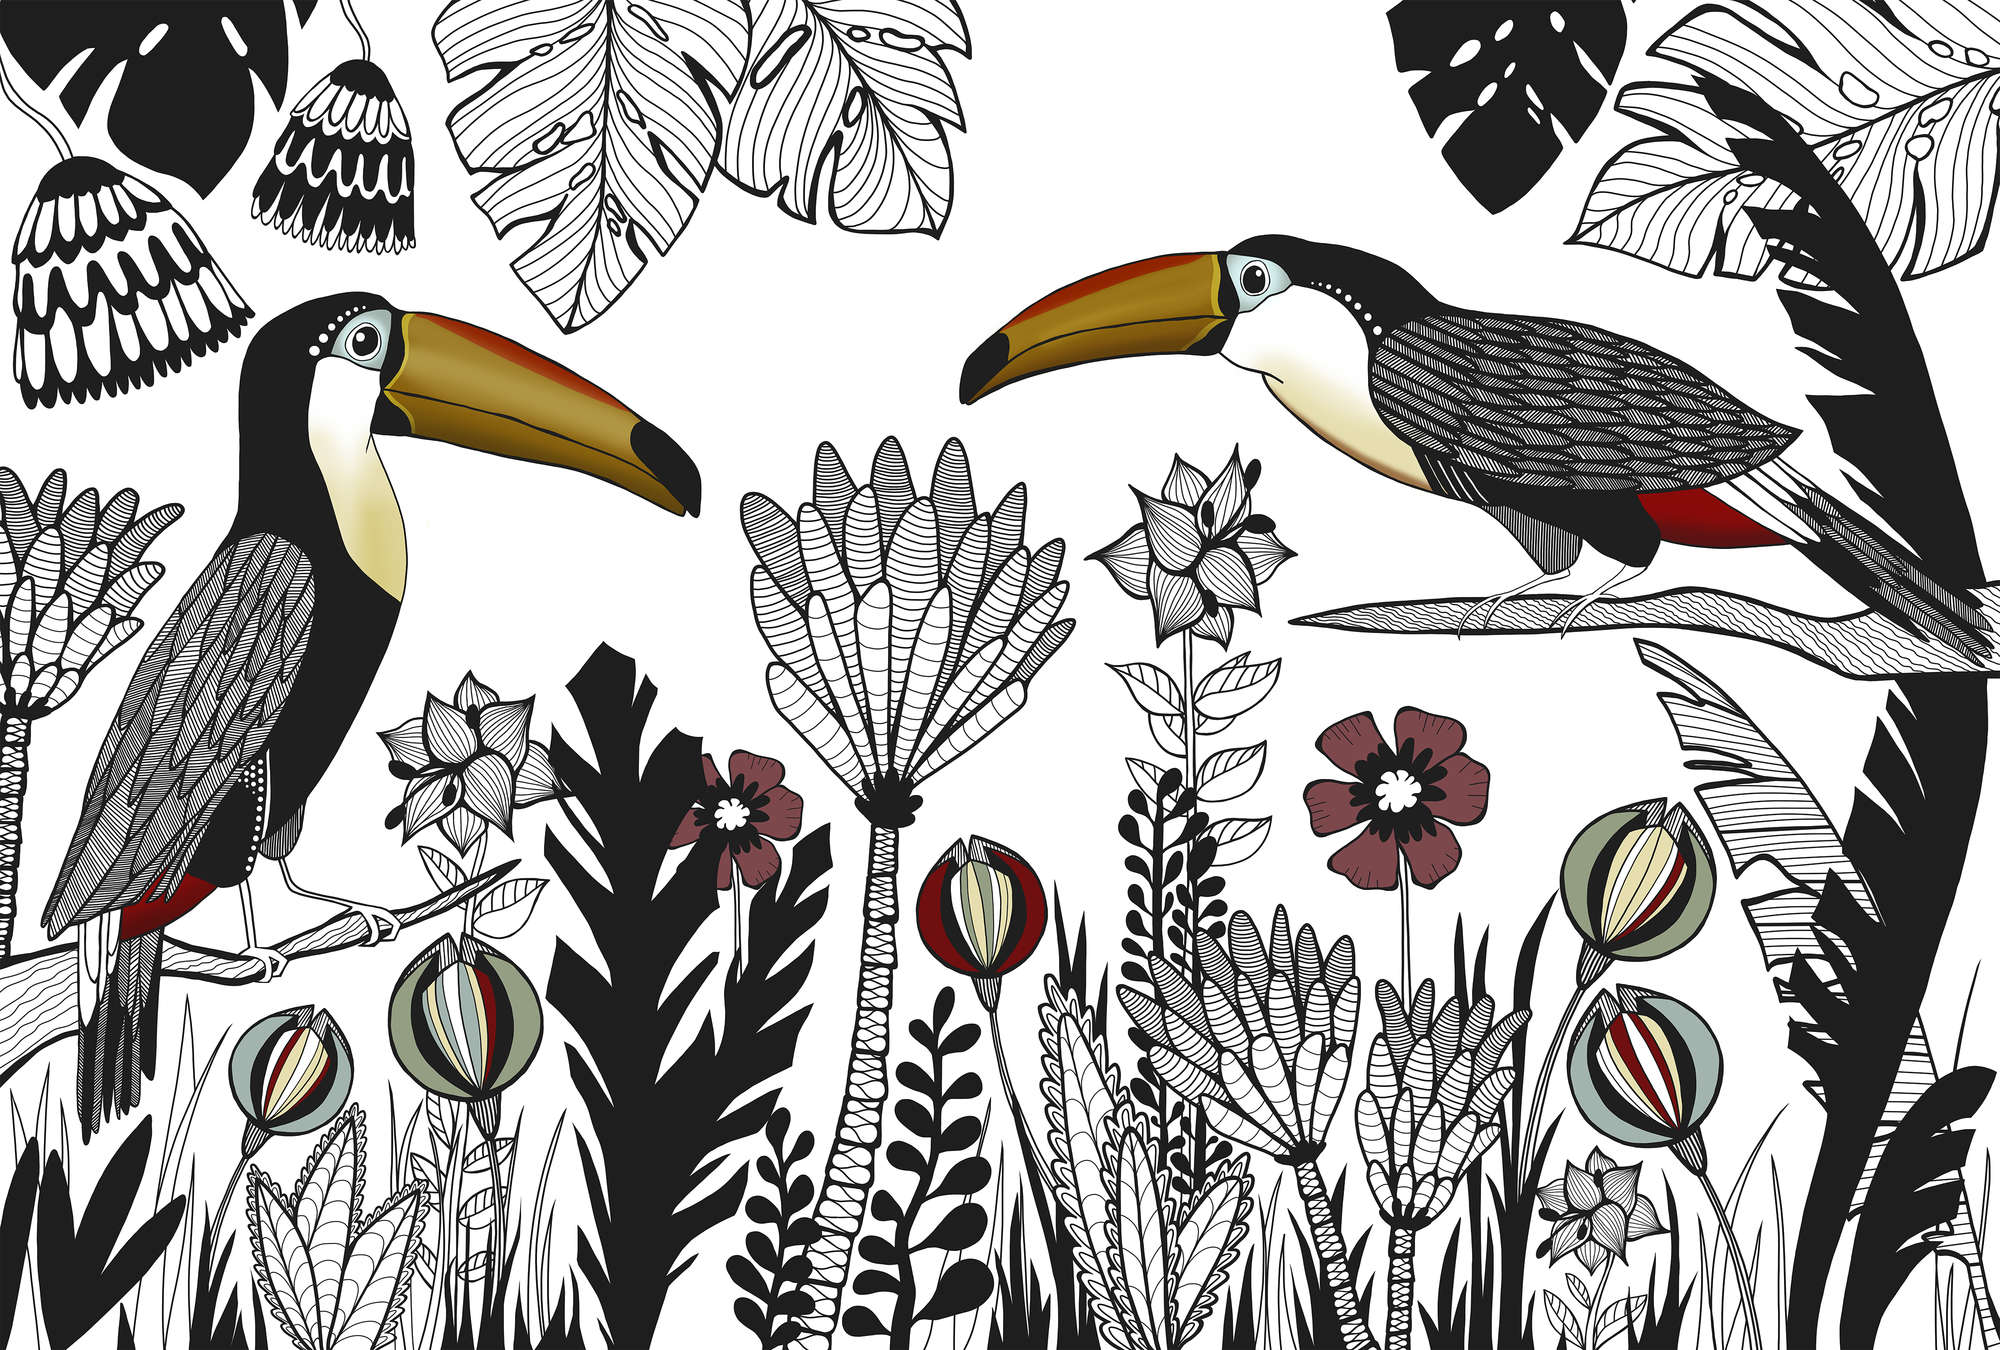             Vogel muurschildering toekan met tropisch patroon in tekenstijl
        